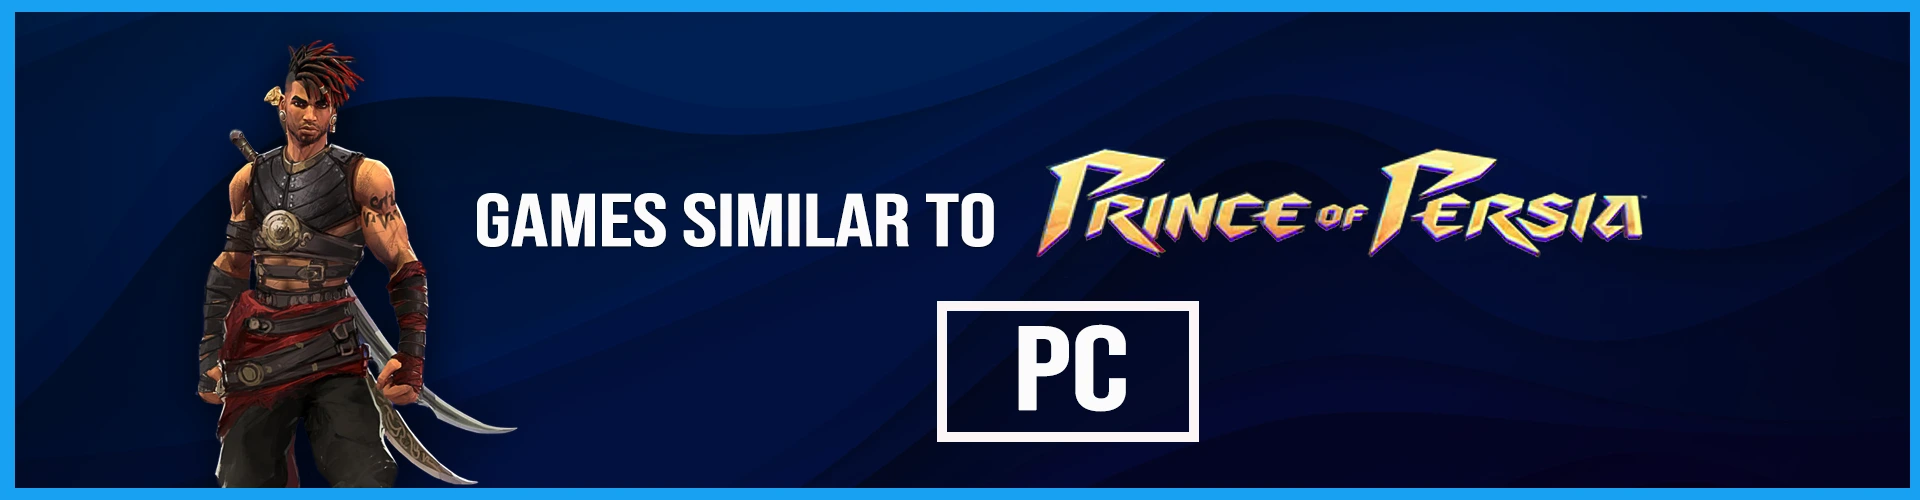 Juegos de PC similares Prince of Persia